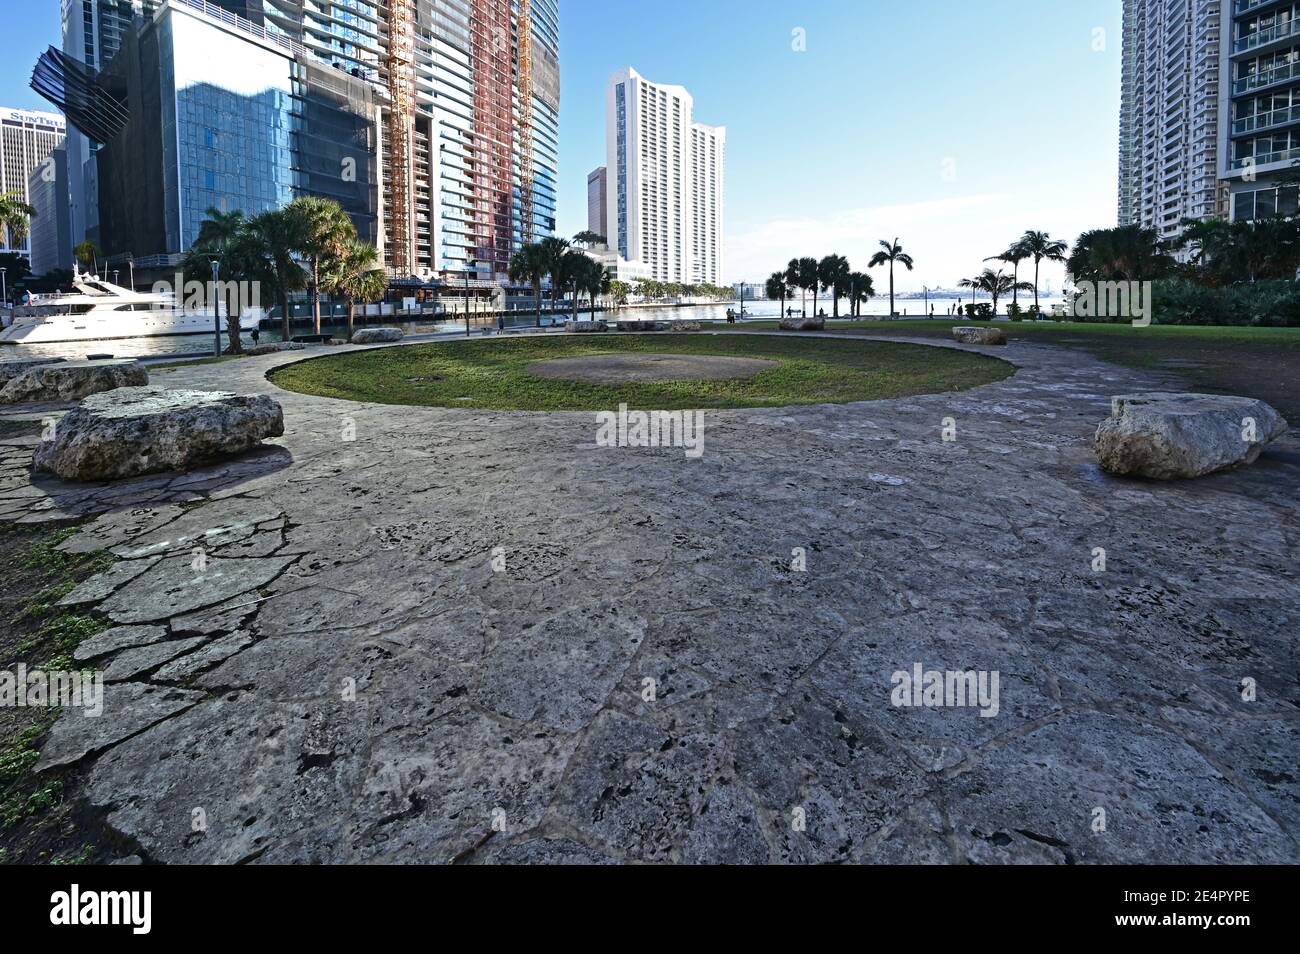 Miami, Floride 01-24-2021 Miami Circle, un site archéologique de Brickell point attribué aux Indiens Tequesta qui pensaient avoir 2,000 ans. Banque D'Images